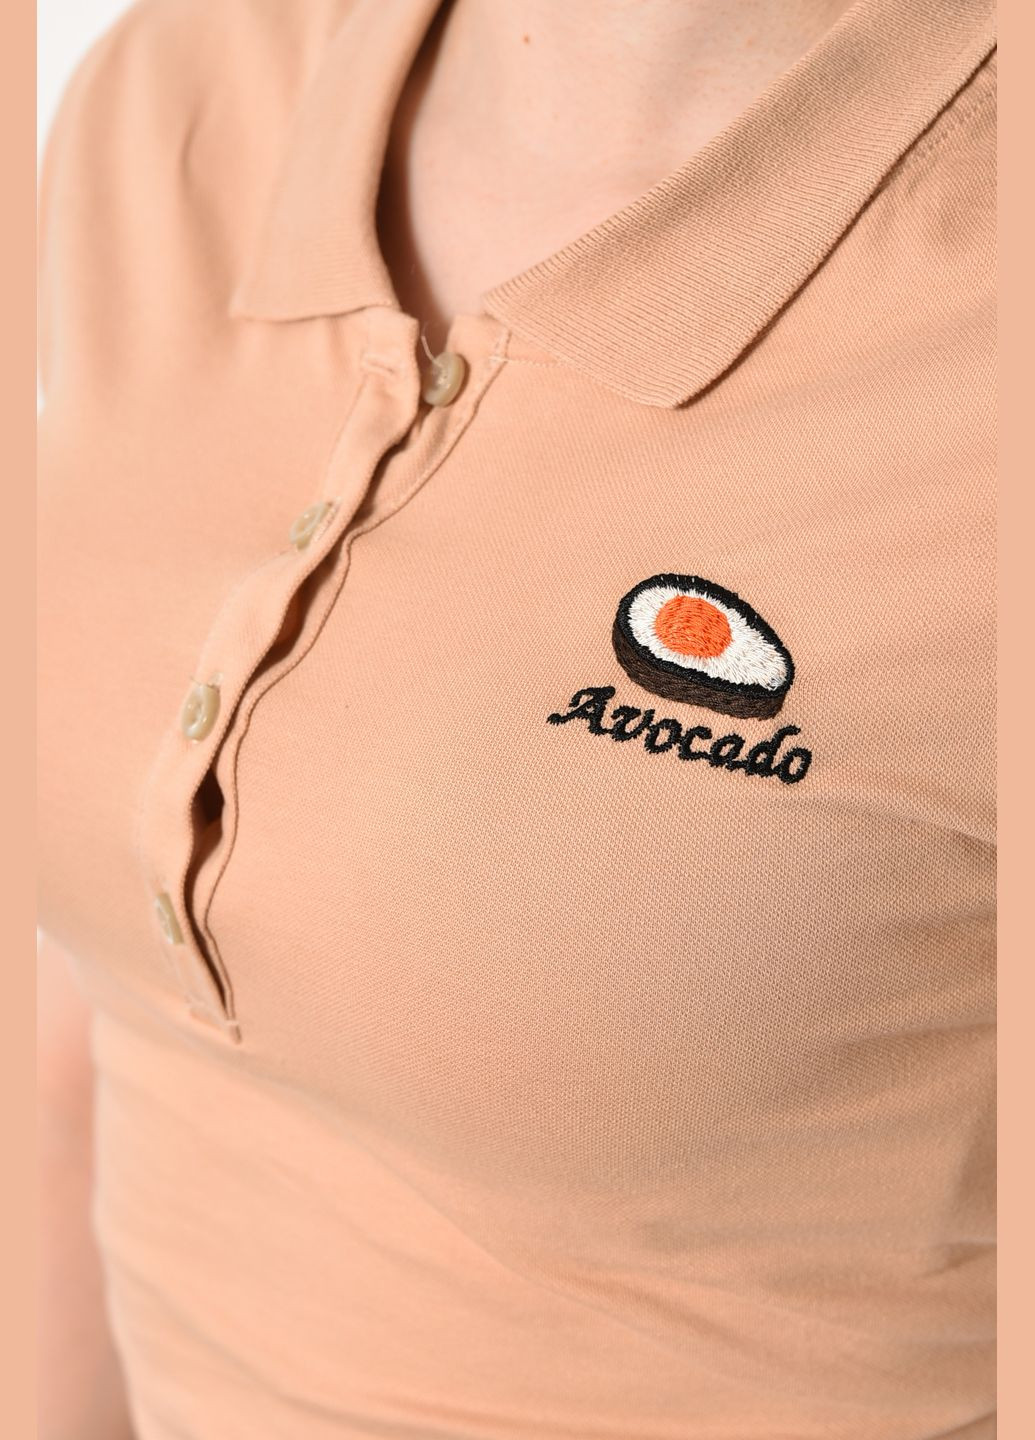 Бежева літня футболка жіноча поло бежевого кольору Let's Shop